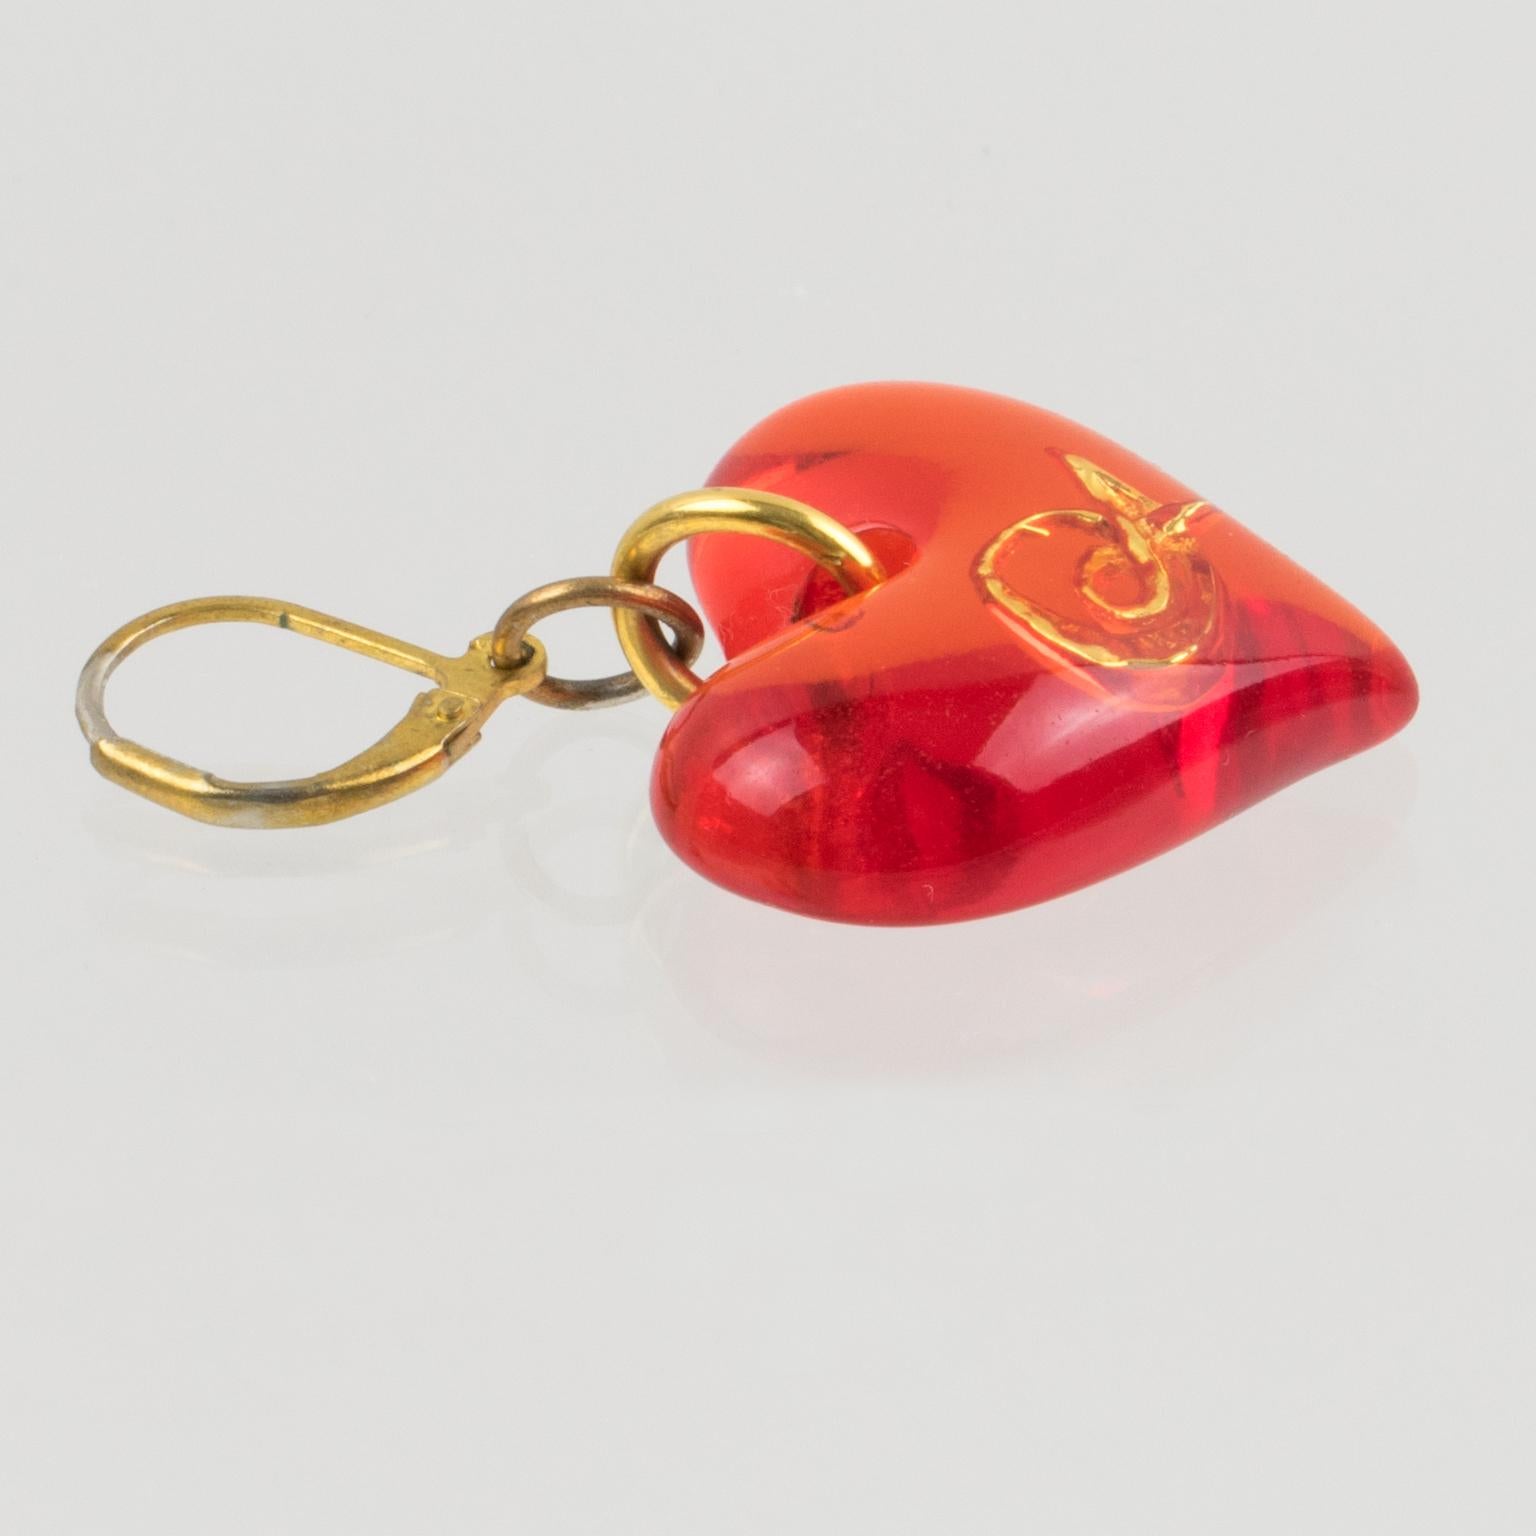 Romantic Christian Lacroix Pierced Earrings Neon Orange Resin Heart For Sale